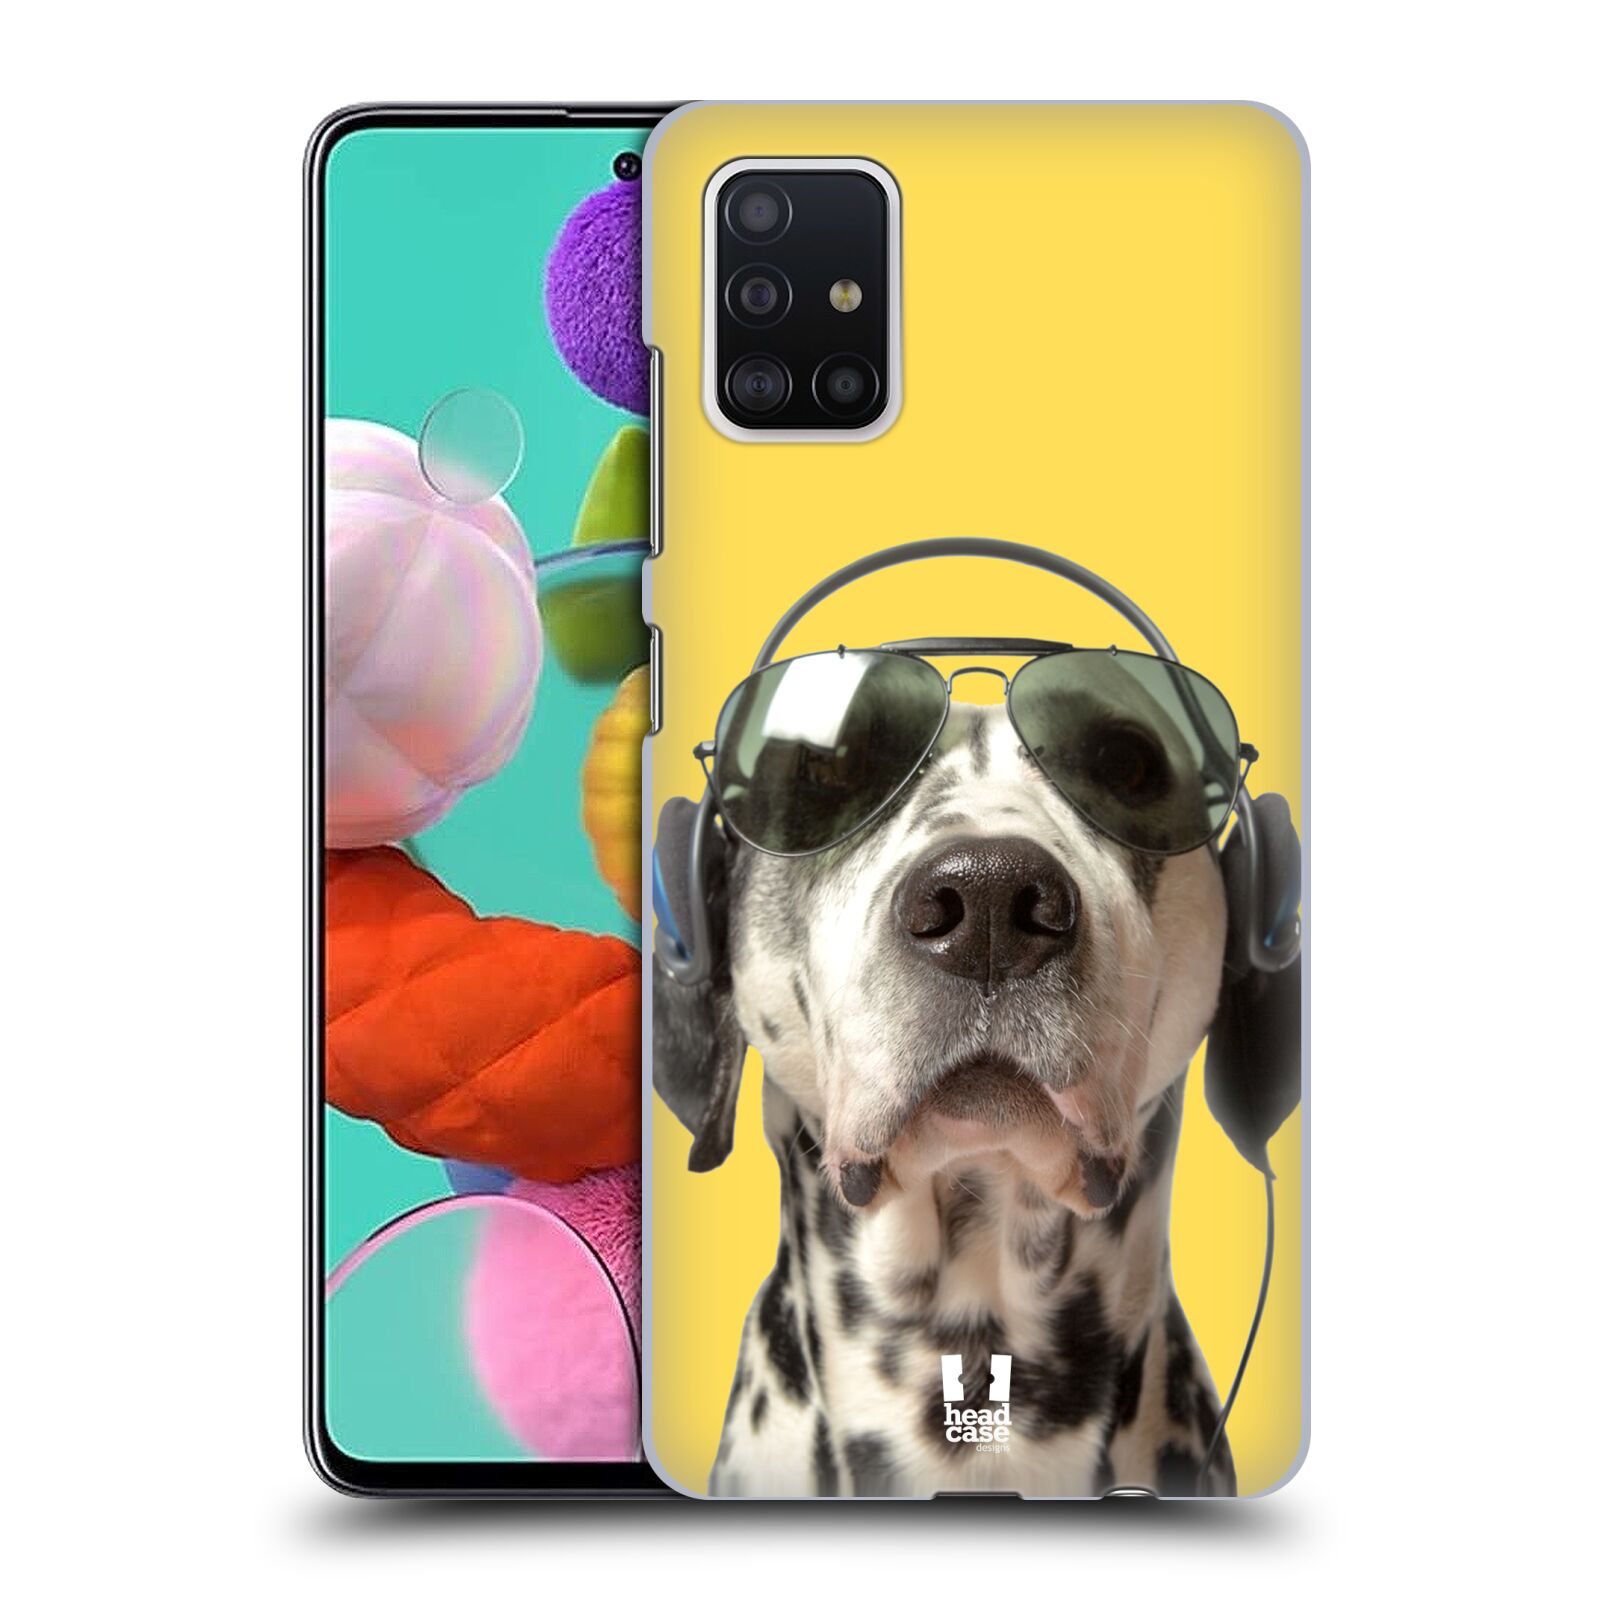 Pouzdro na mobil Samsung Galaxy A51 - HEAD CASE - vzor Legrační zvířátka dalmatin se sluchátky žlutá